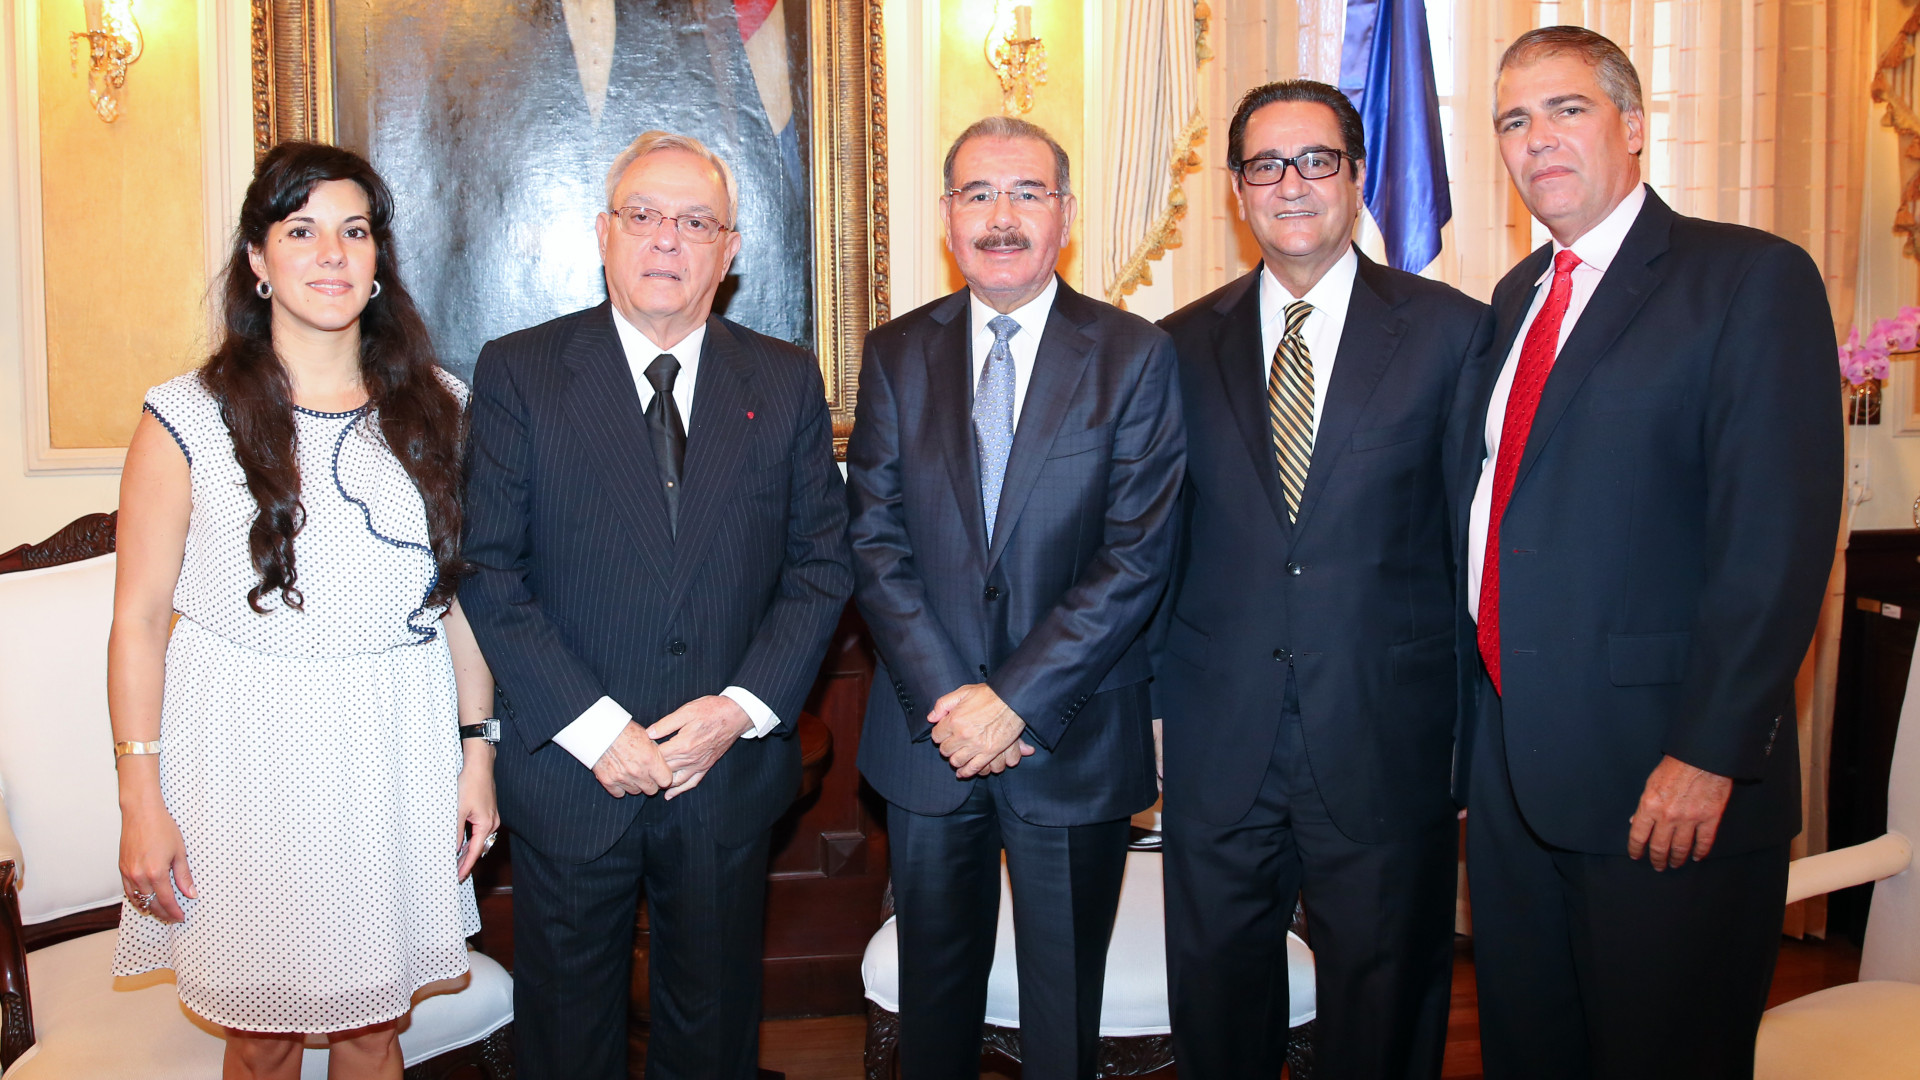 REPÚBLICA DOMINICANA: Presidente Danilo Medina envía carta de condolencias a pueblo y gobierno cubanos por fallecimiento historiador de La Habana, Eusebio Leal